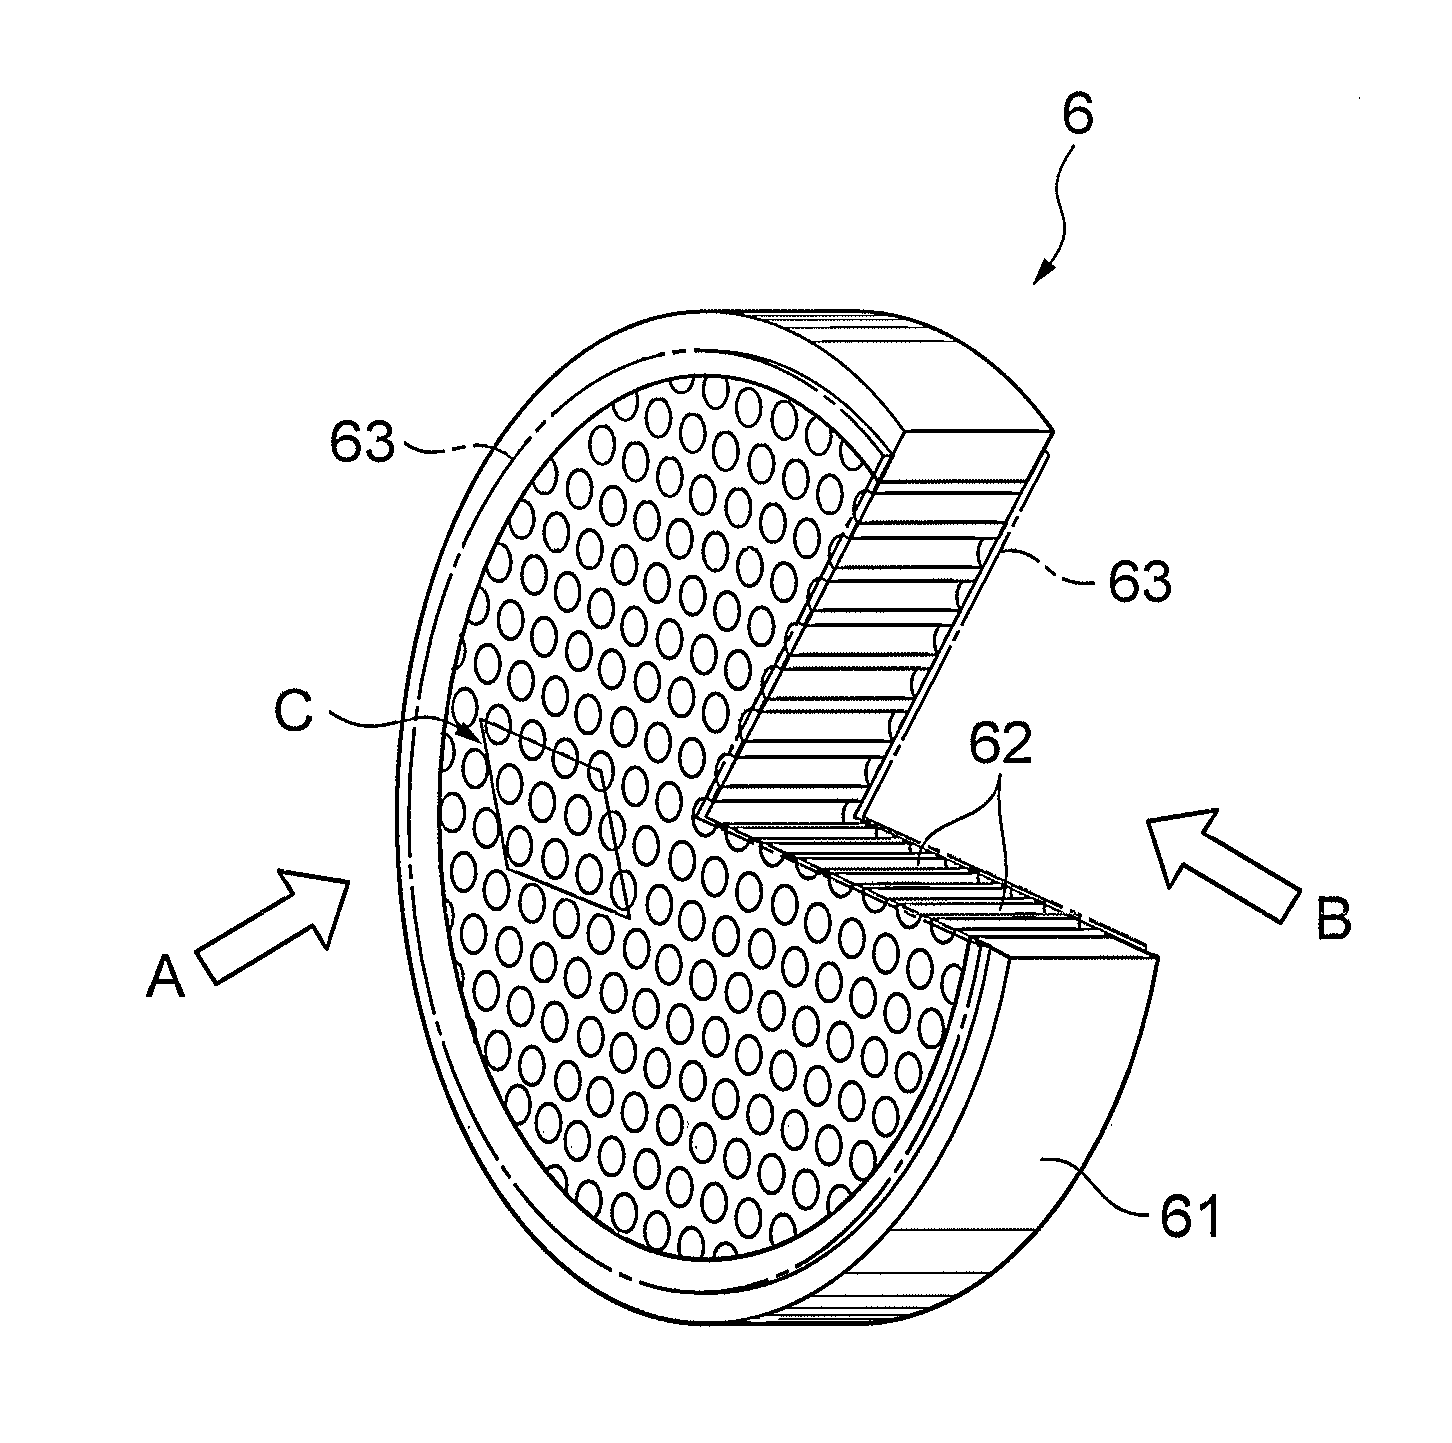 Microchannel plate